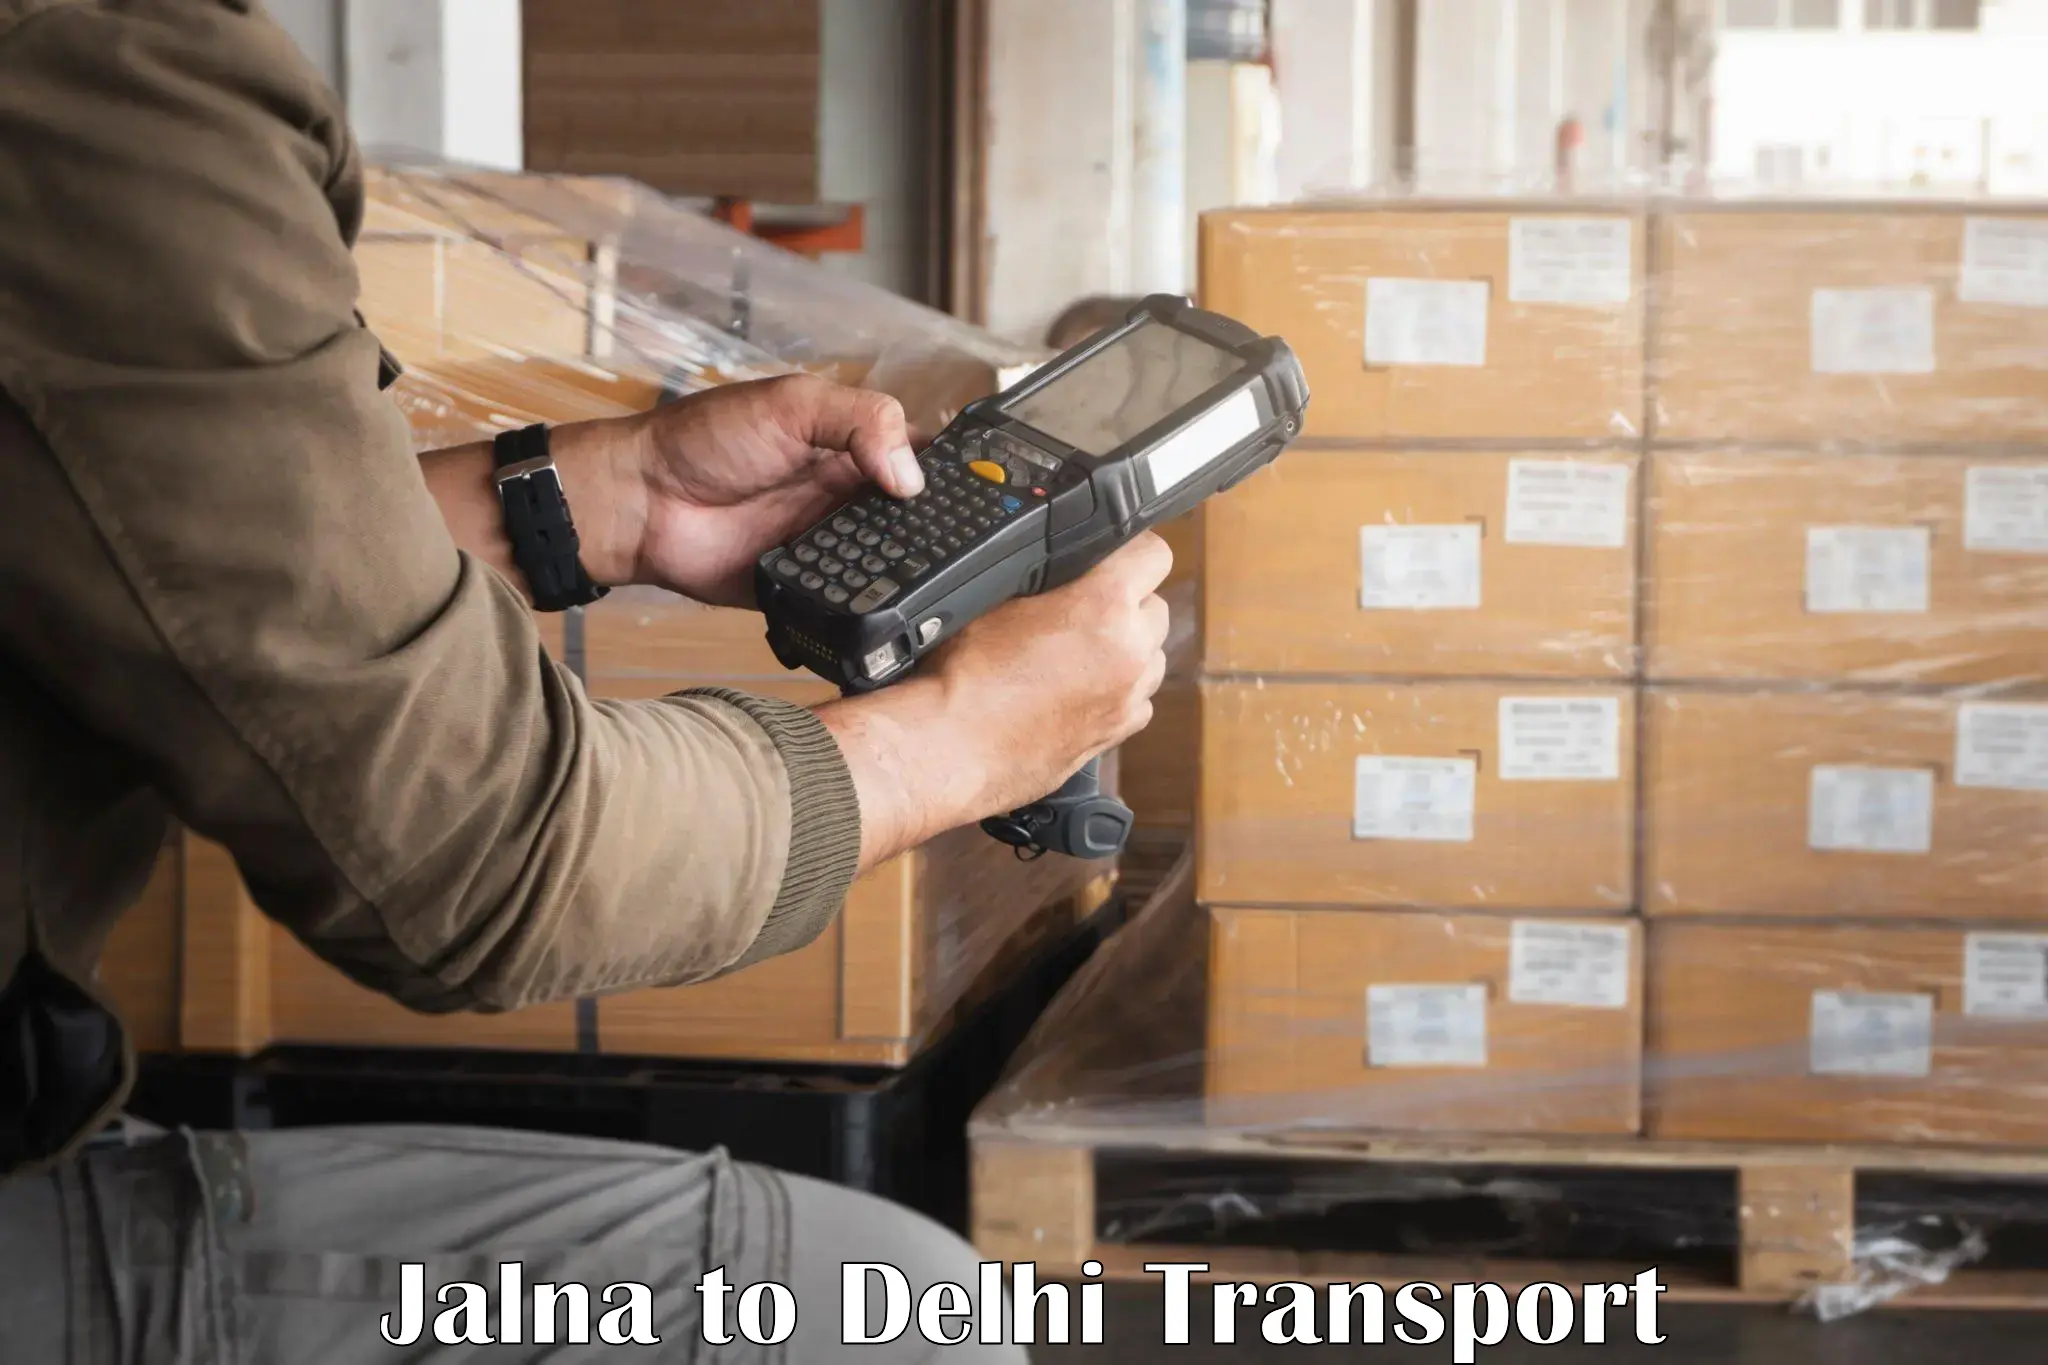 Road transport online services Jalna to NIT Delhi